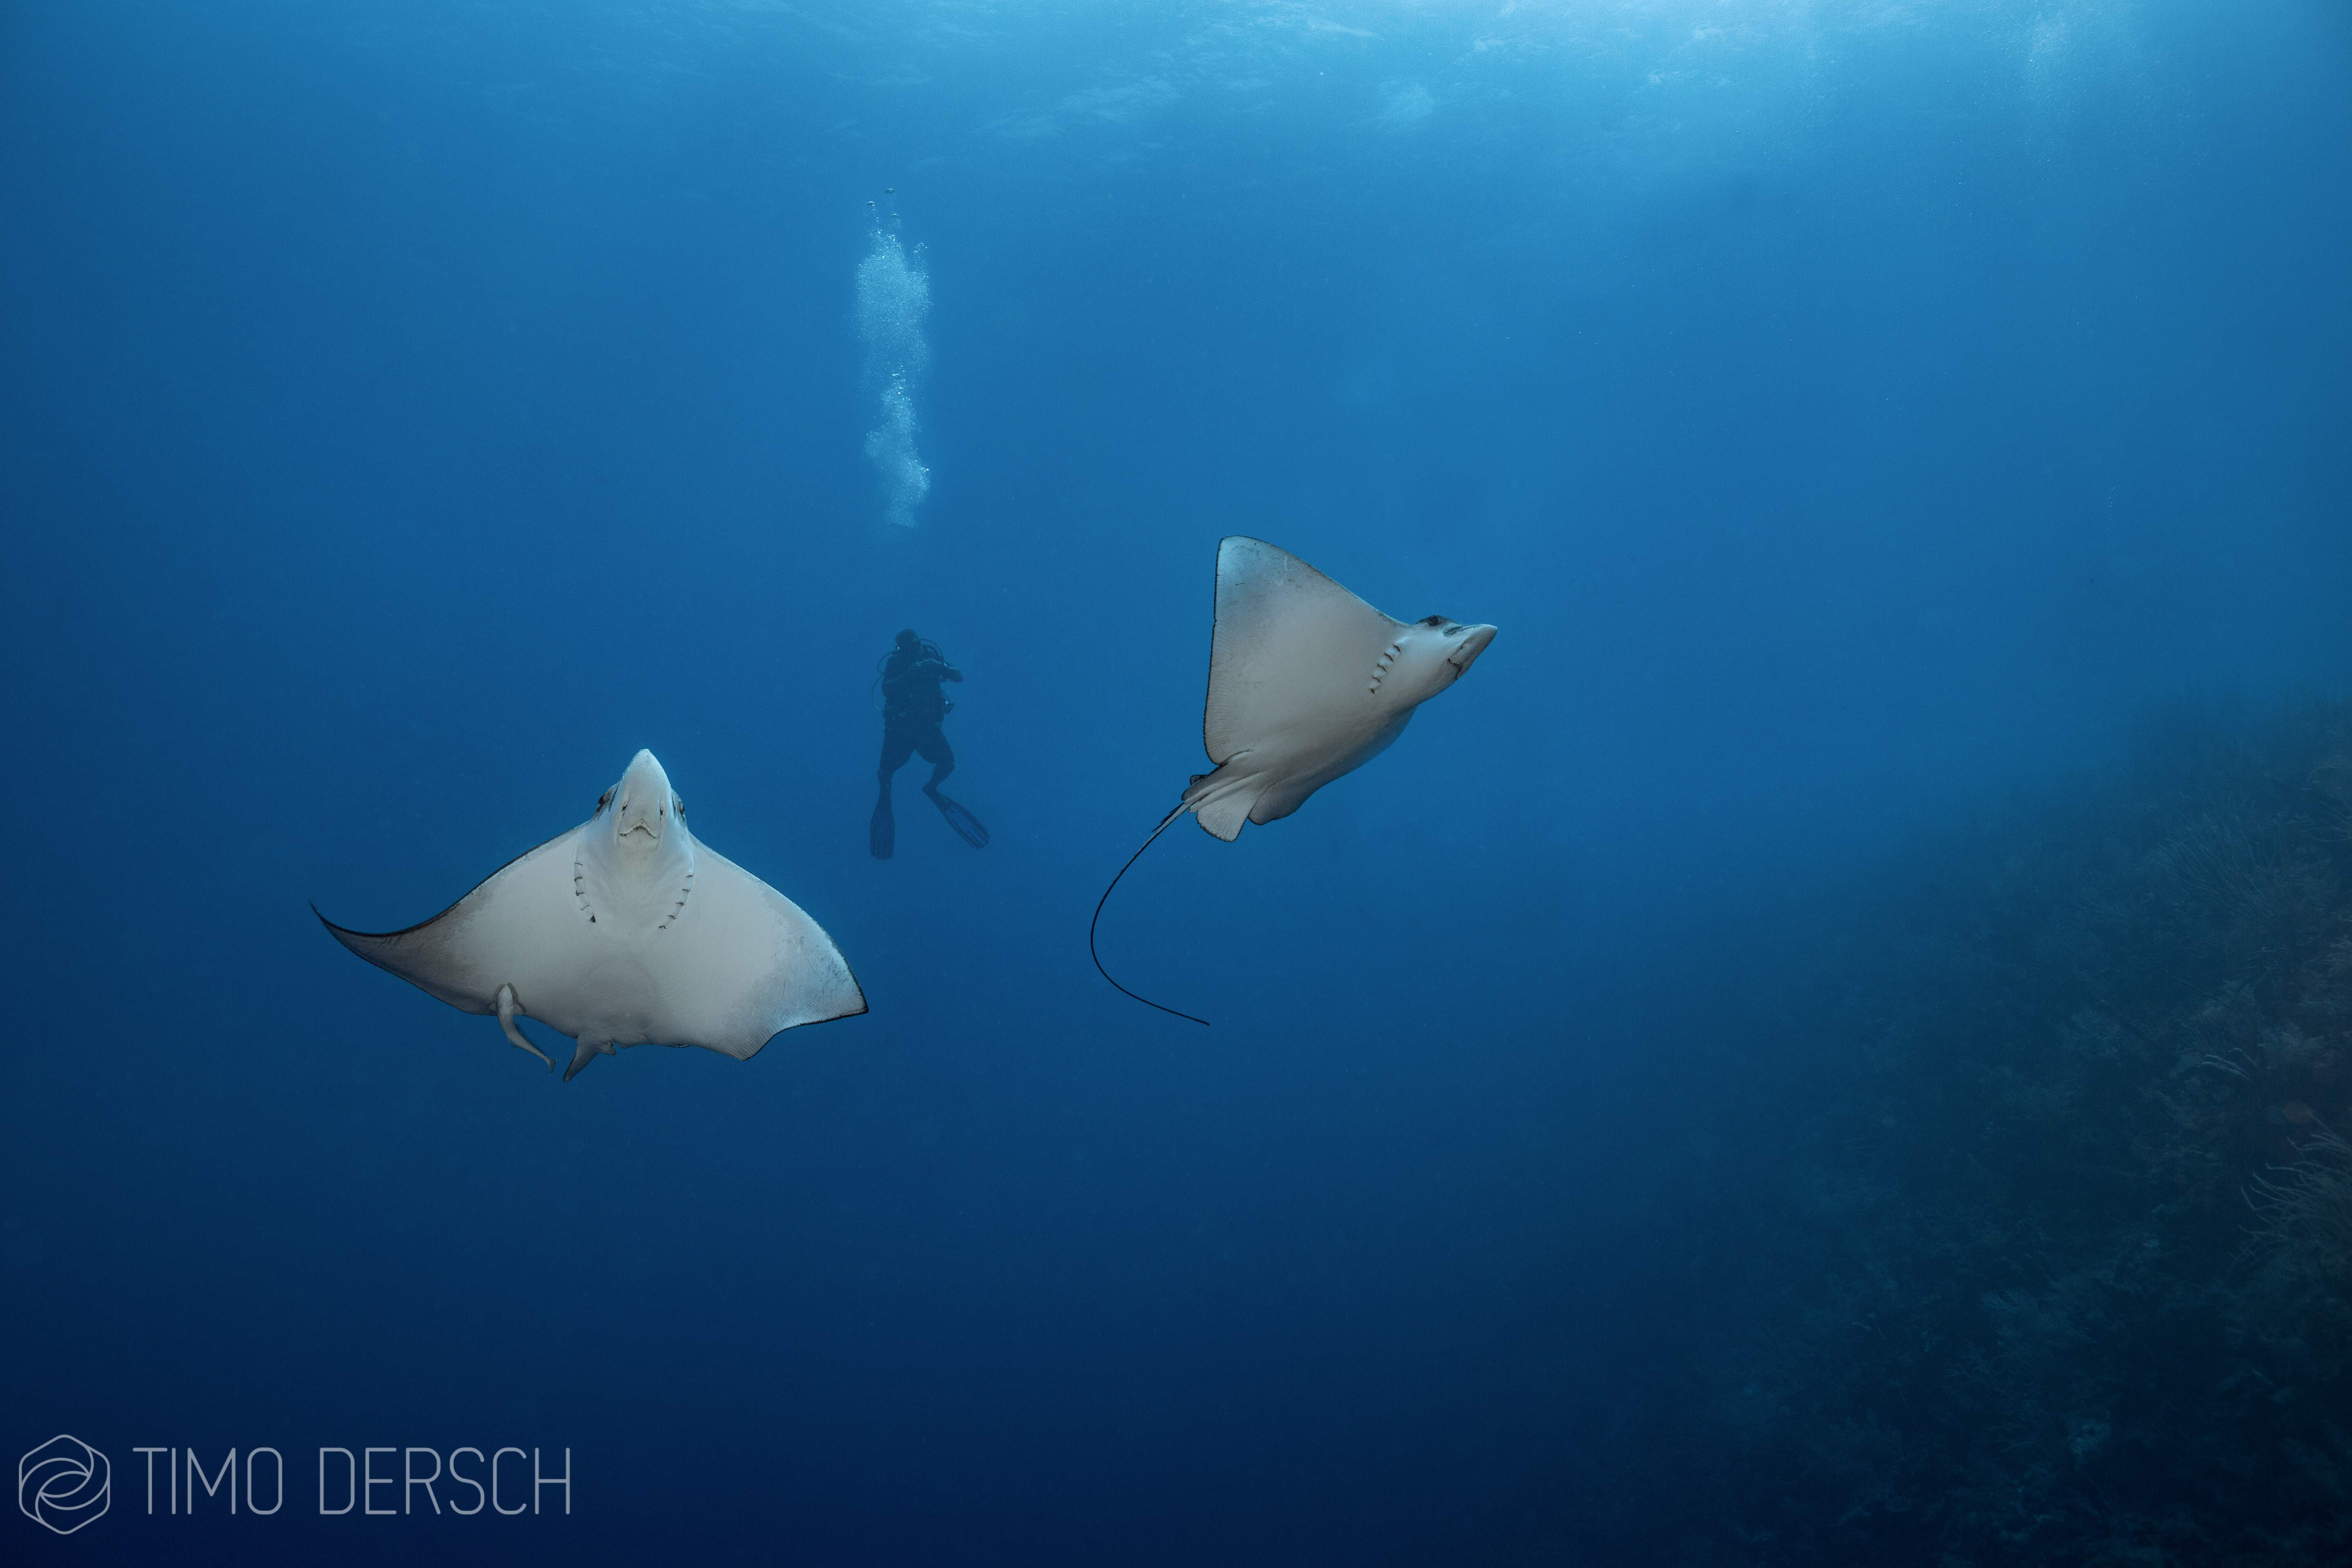 Timo dersch journalist diver writer underwater photgrapher